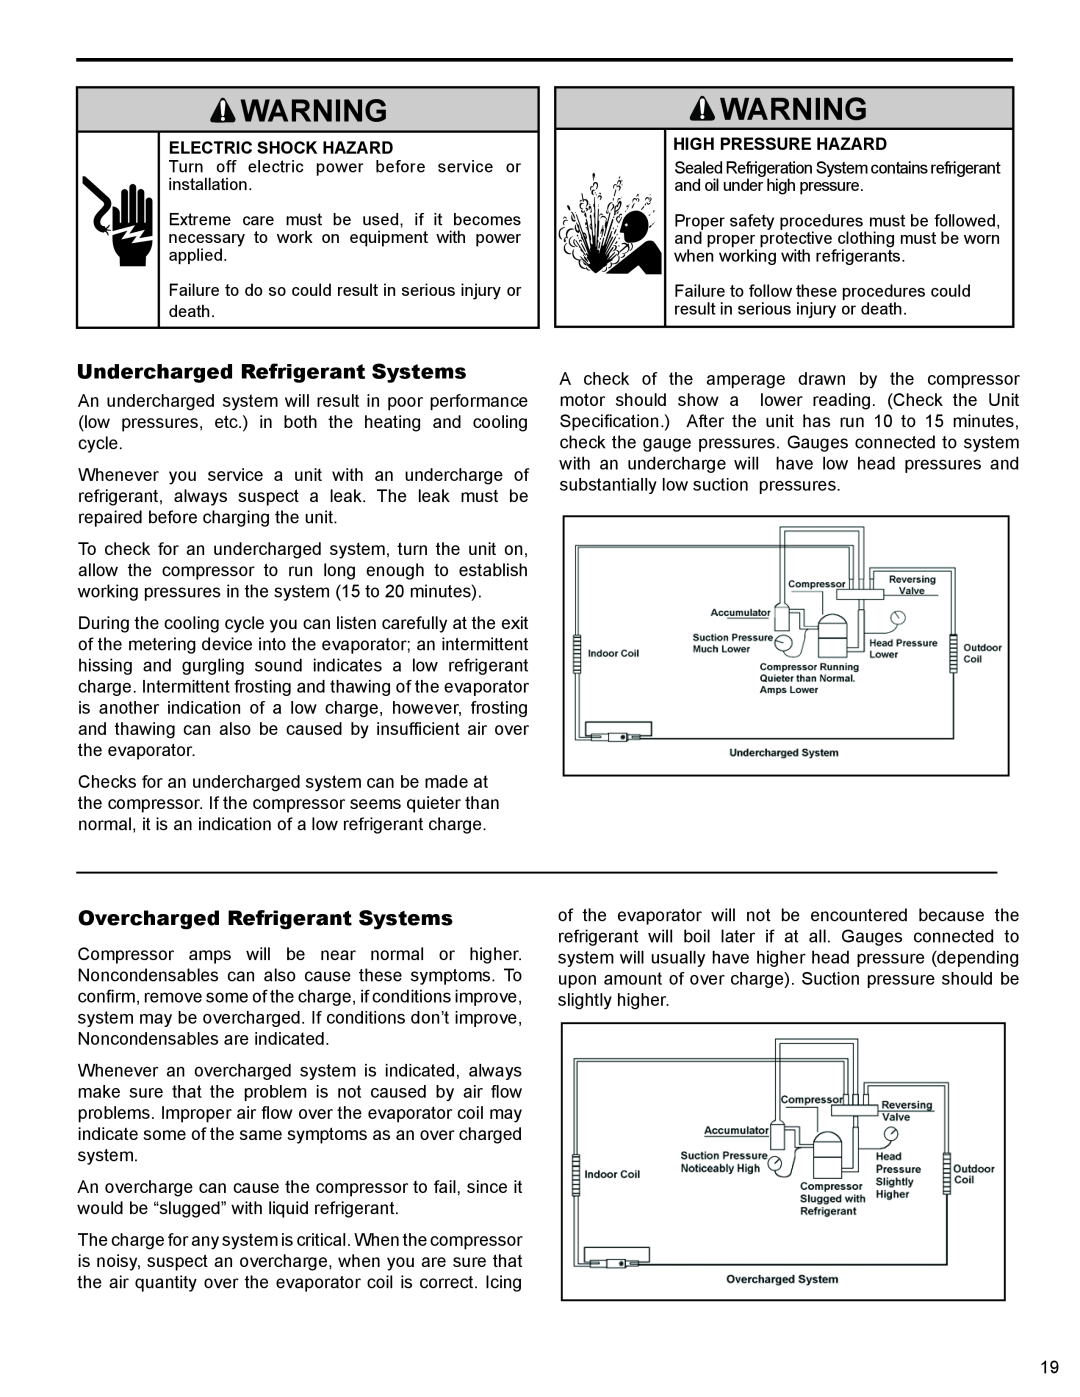 Friedrich WS10B10 service manual Undercharged Refrigerant Systems, Overcharged Refrigerant Systems, Electric Shock Hazard 